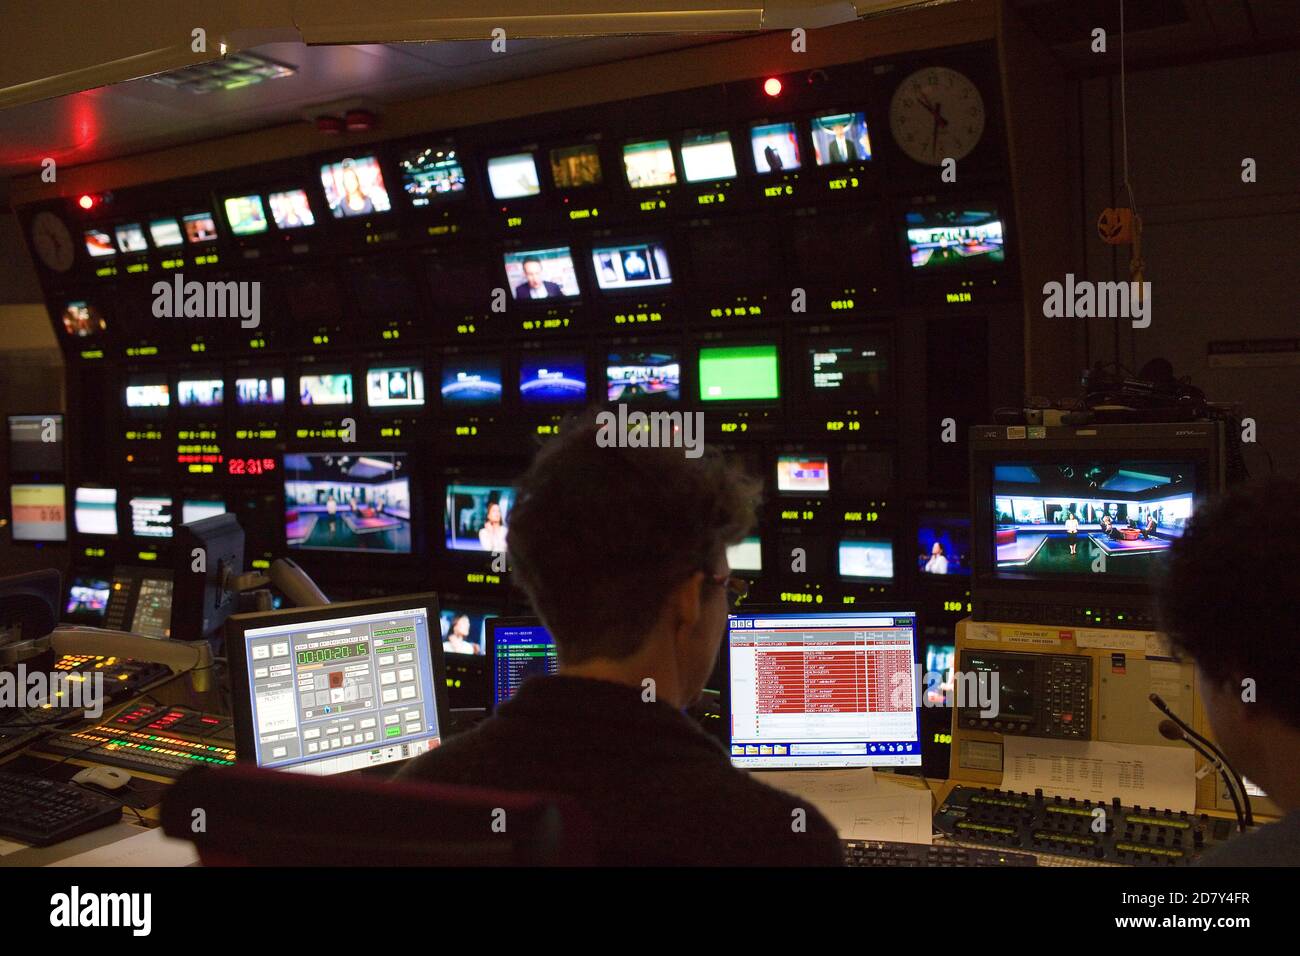 Dietro le quinte del BBCTelevision Center, Mishal Husain si prepara a presentare Newnsight. Foto Stock